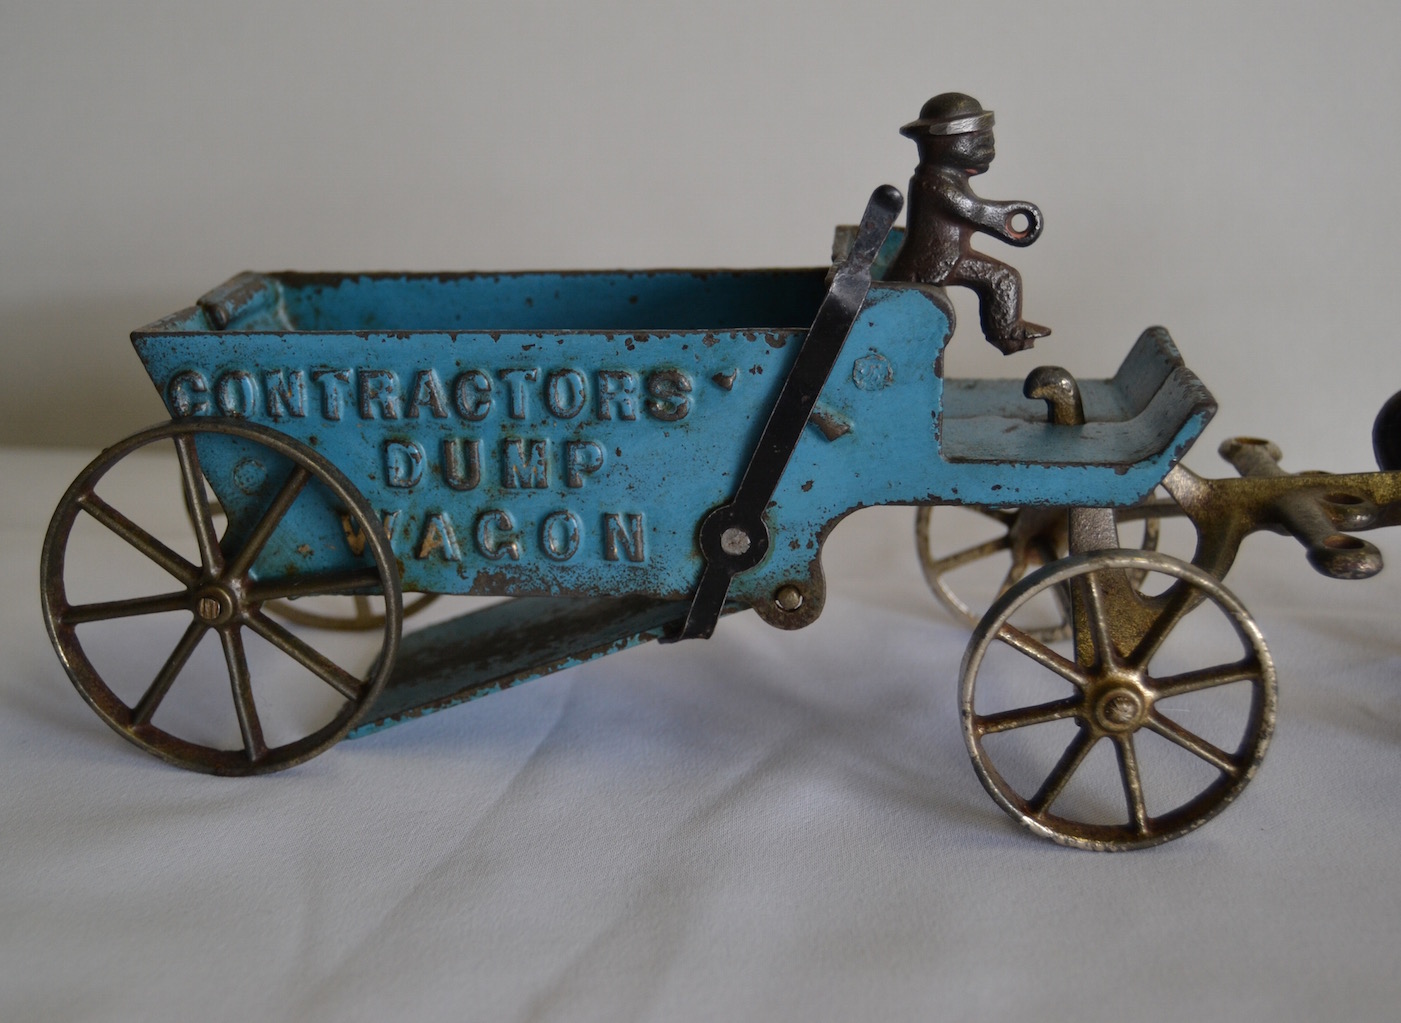 Details about   Vintage Arcade Cast Iron Contractors Dump Wagon 